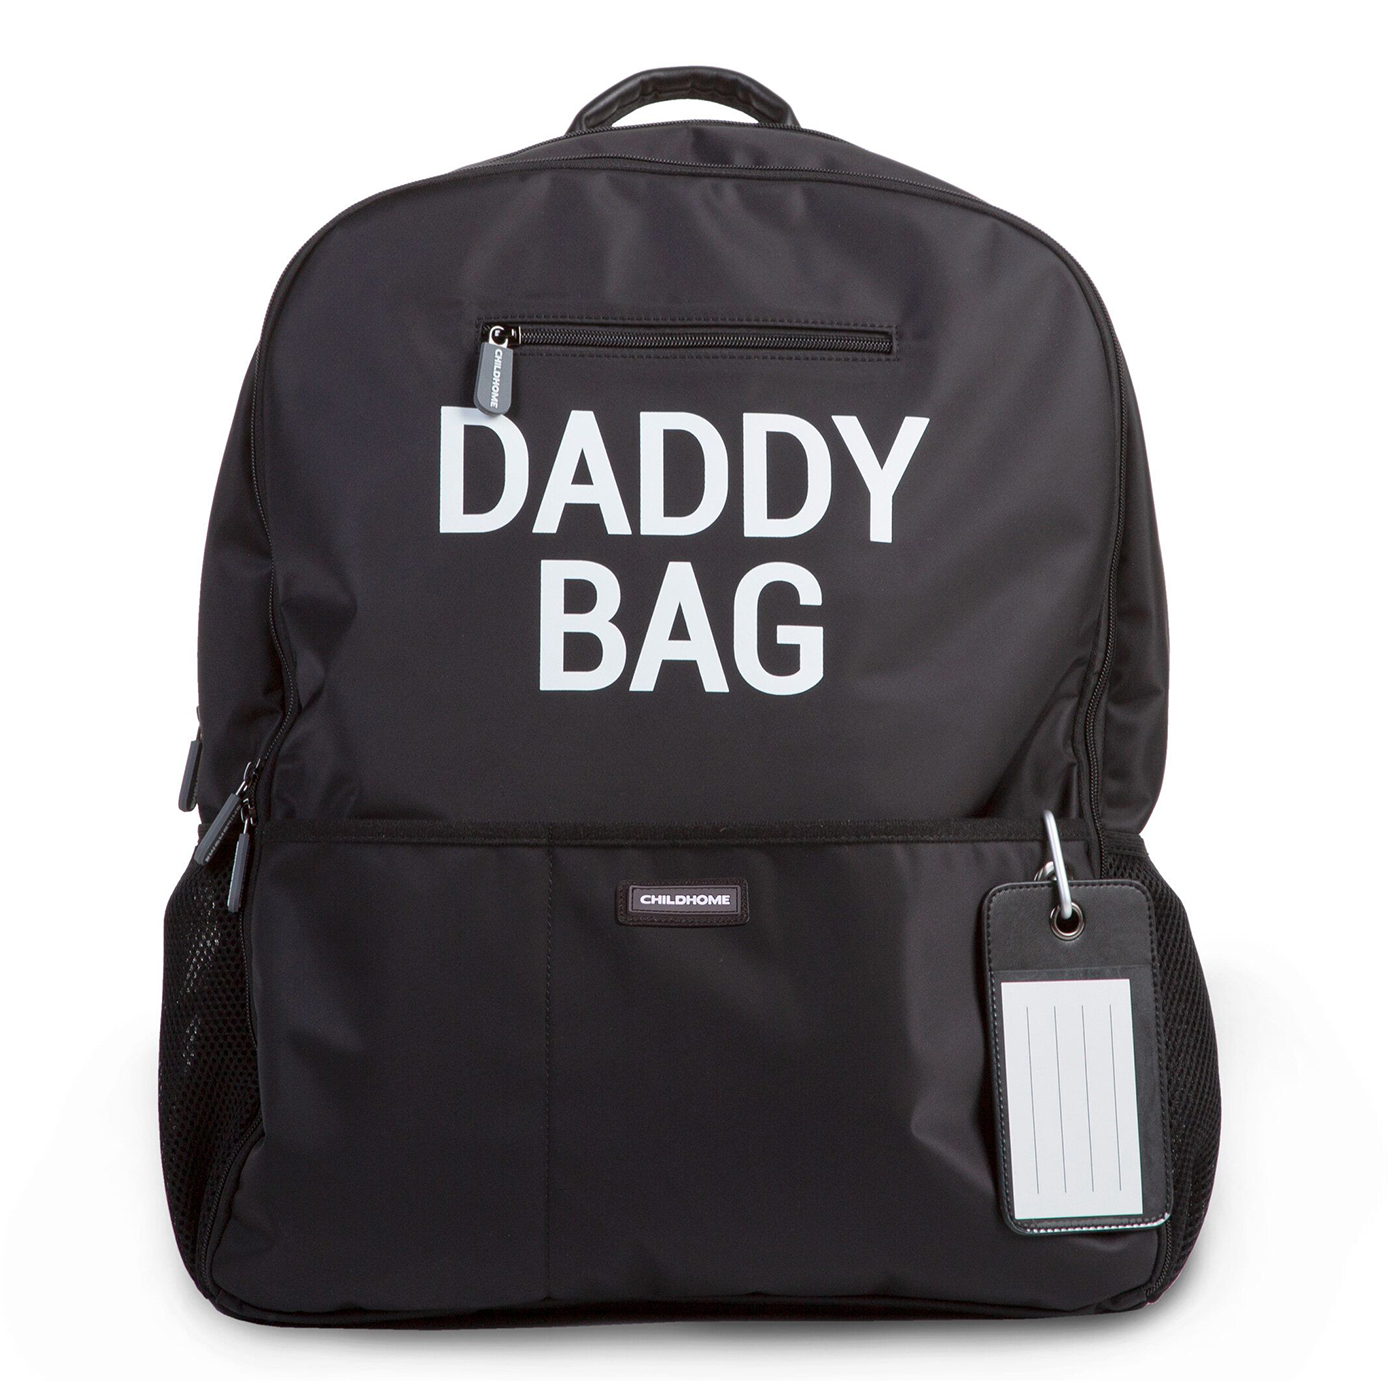  Childhome Daddy Bag Sırt Çantası  | Siyah